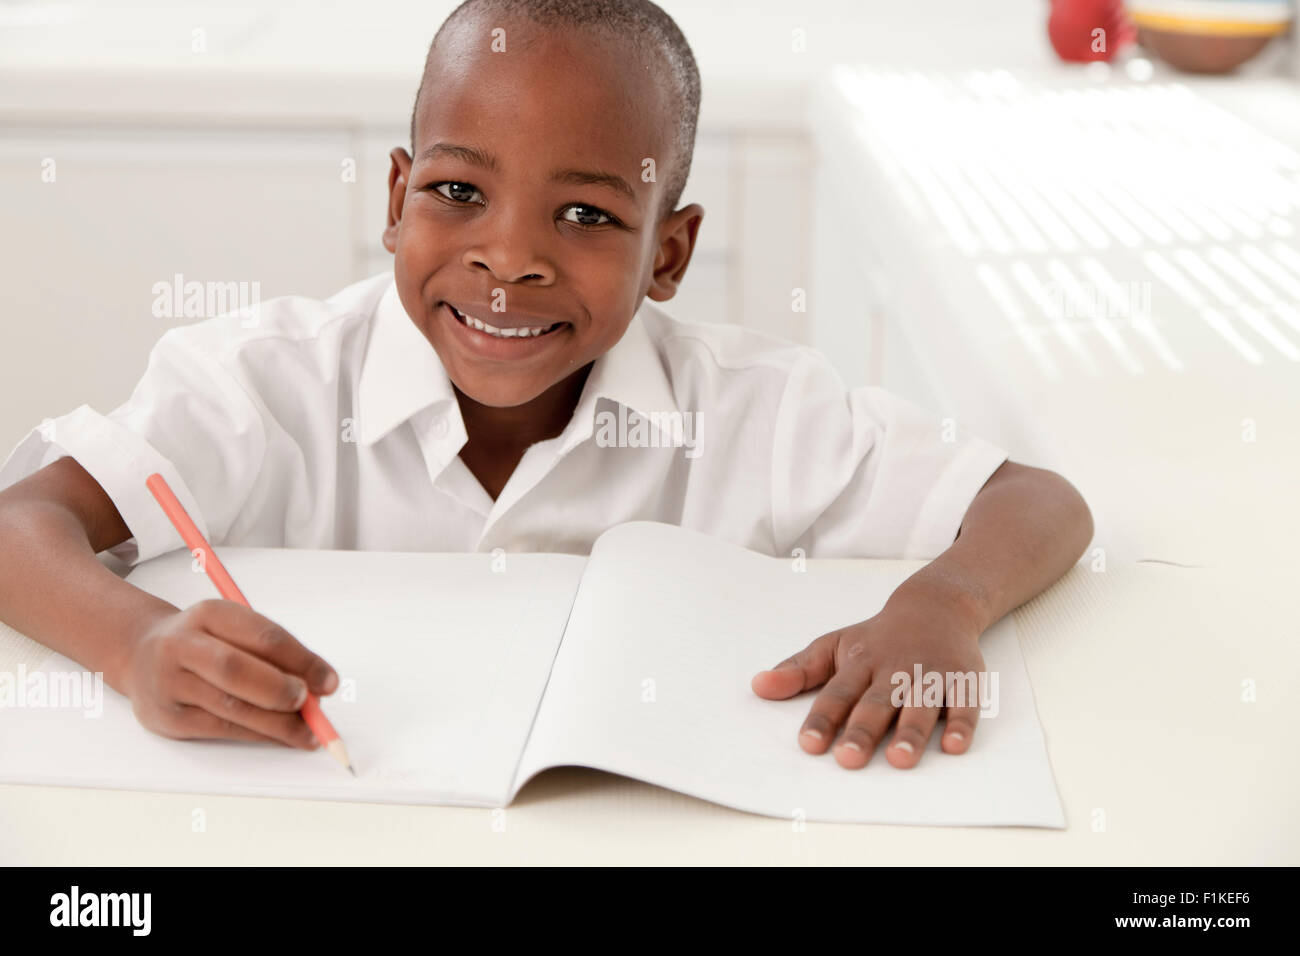 Jeune garçon africain fait ses devoirs dans la cuisine, smiling at camera Banque D'Images